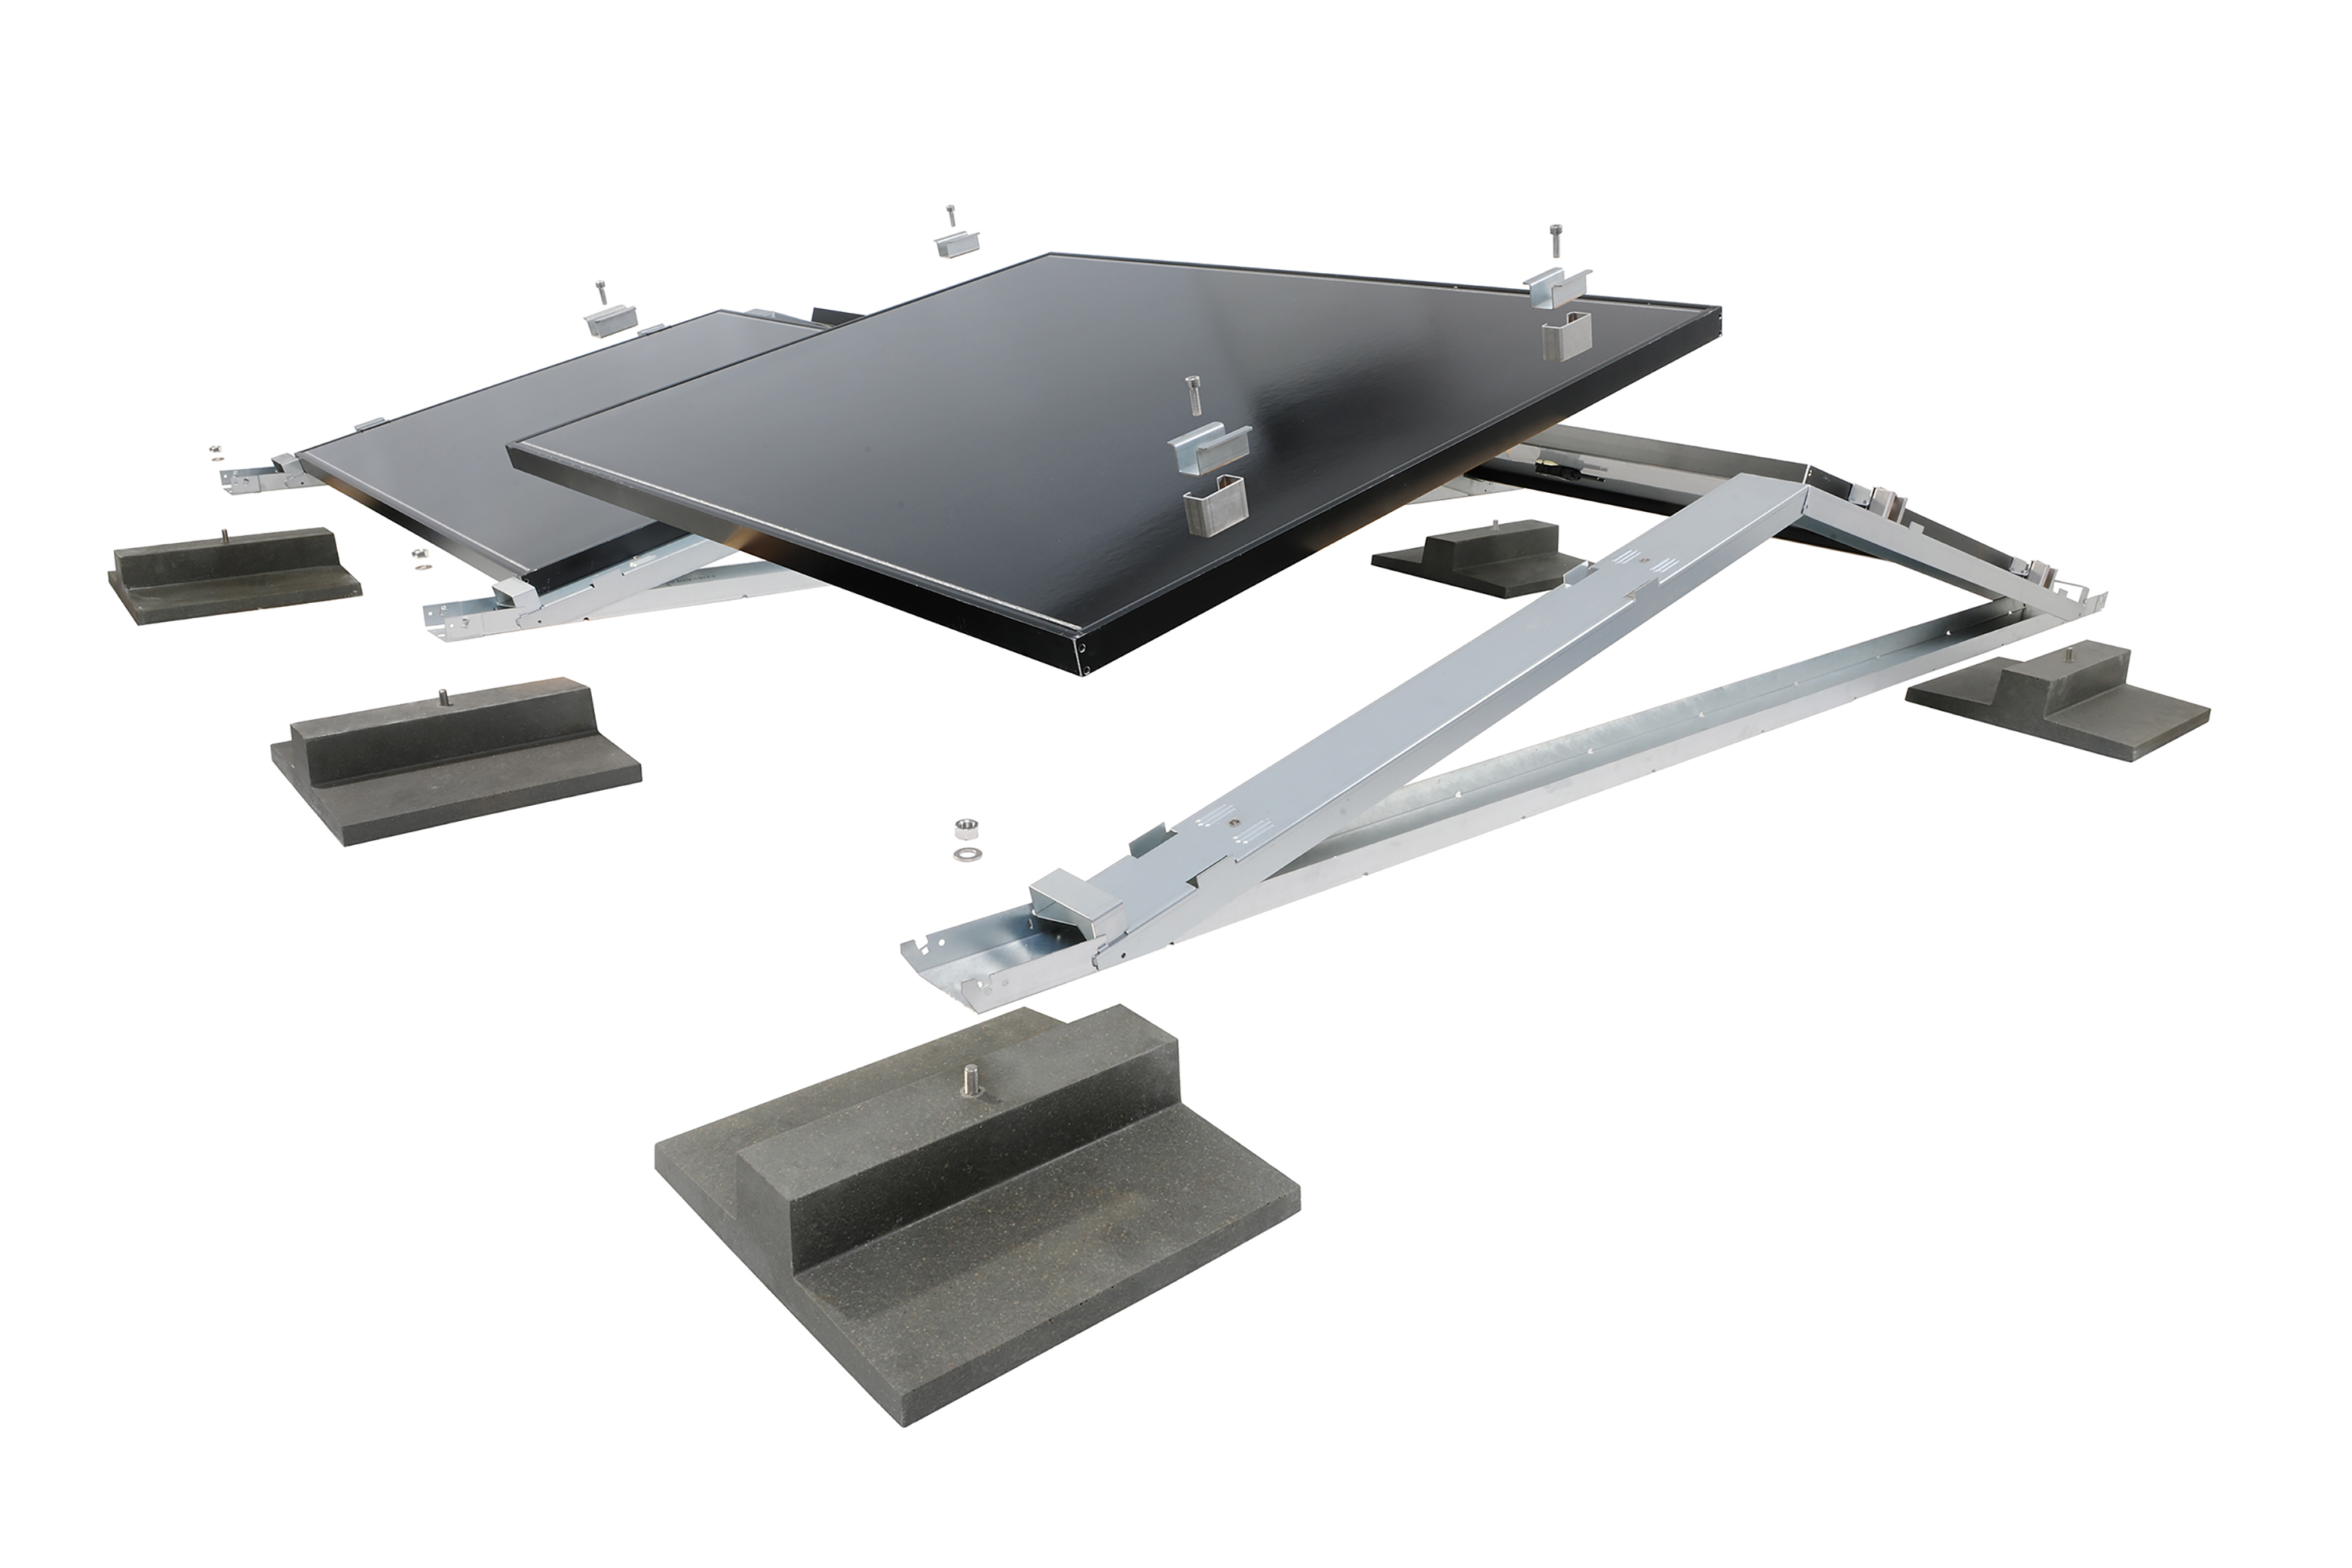 De "MiraluxFlex" van Richard Brink is de nieuwe uitbreiding van het productassortiment met onderconstructies voor zonnepanelen. In de oost-west oriëntatie beschikken de systemen nu over moduleklemmen. Hiermee kunnen ze flexibel met op de markt verkrijgbare panelen toegepast worden.